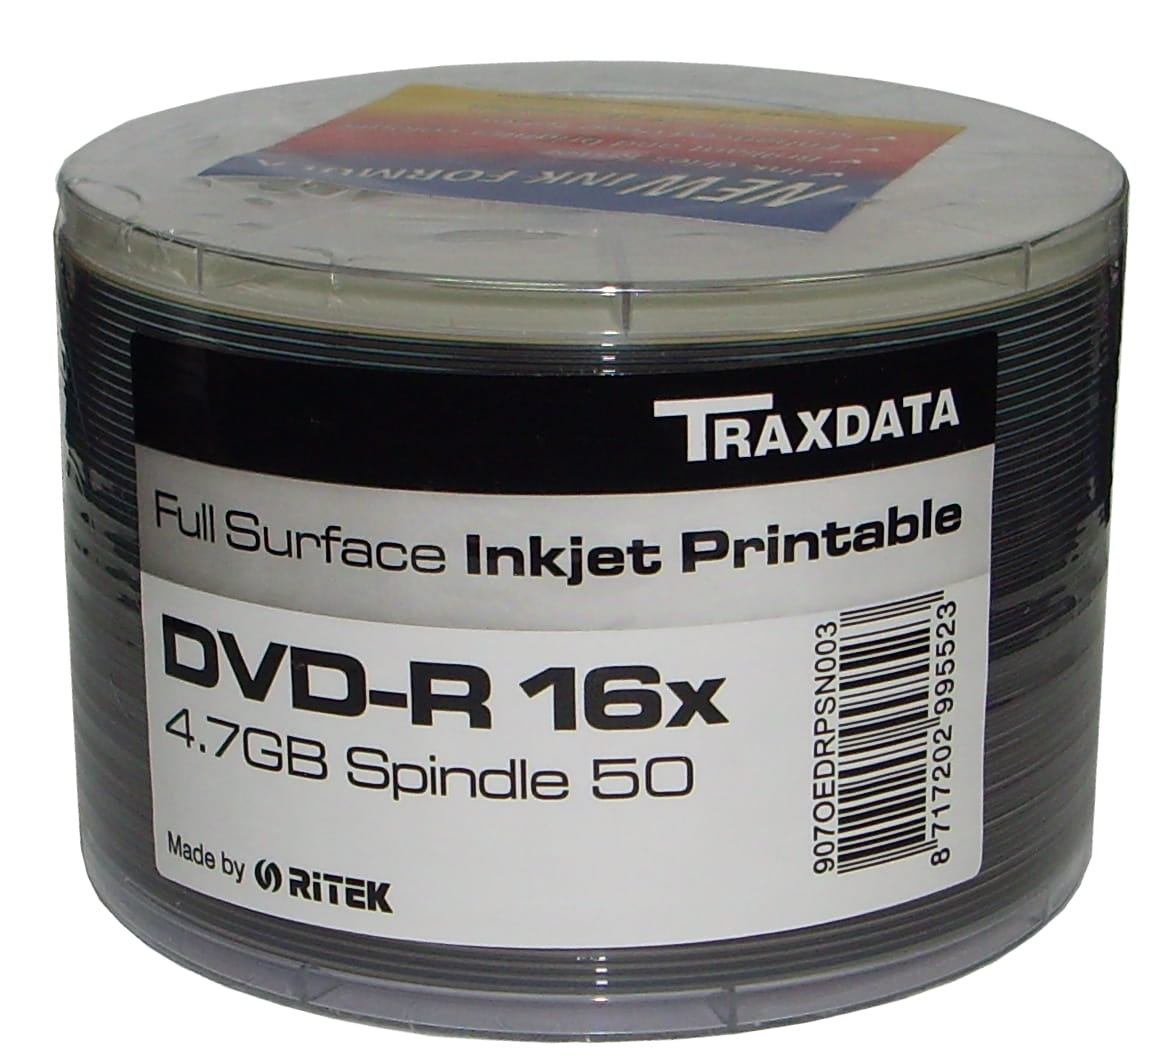 Zdjęcia - Słuchawki Ritek DVD-R x16 4,7GB PRINT FF s-50 traxdata 907SP50NOPCPL 